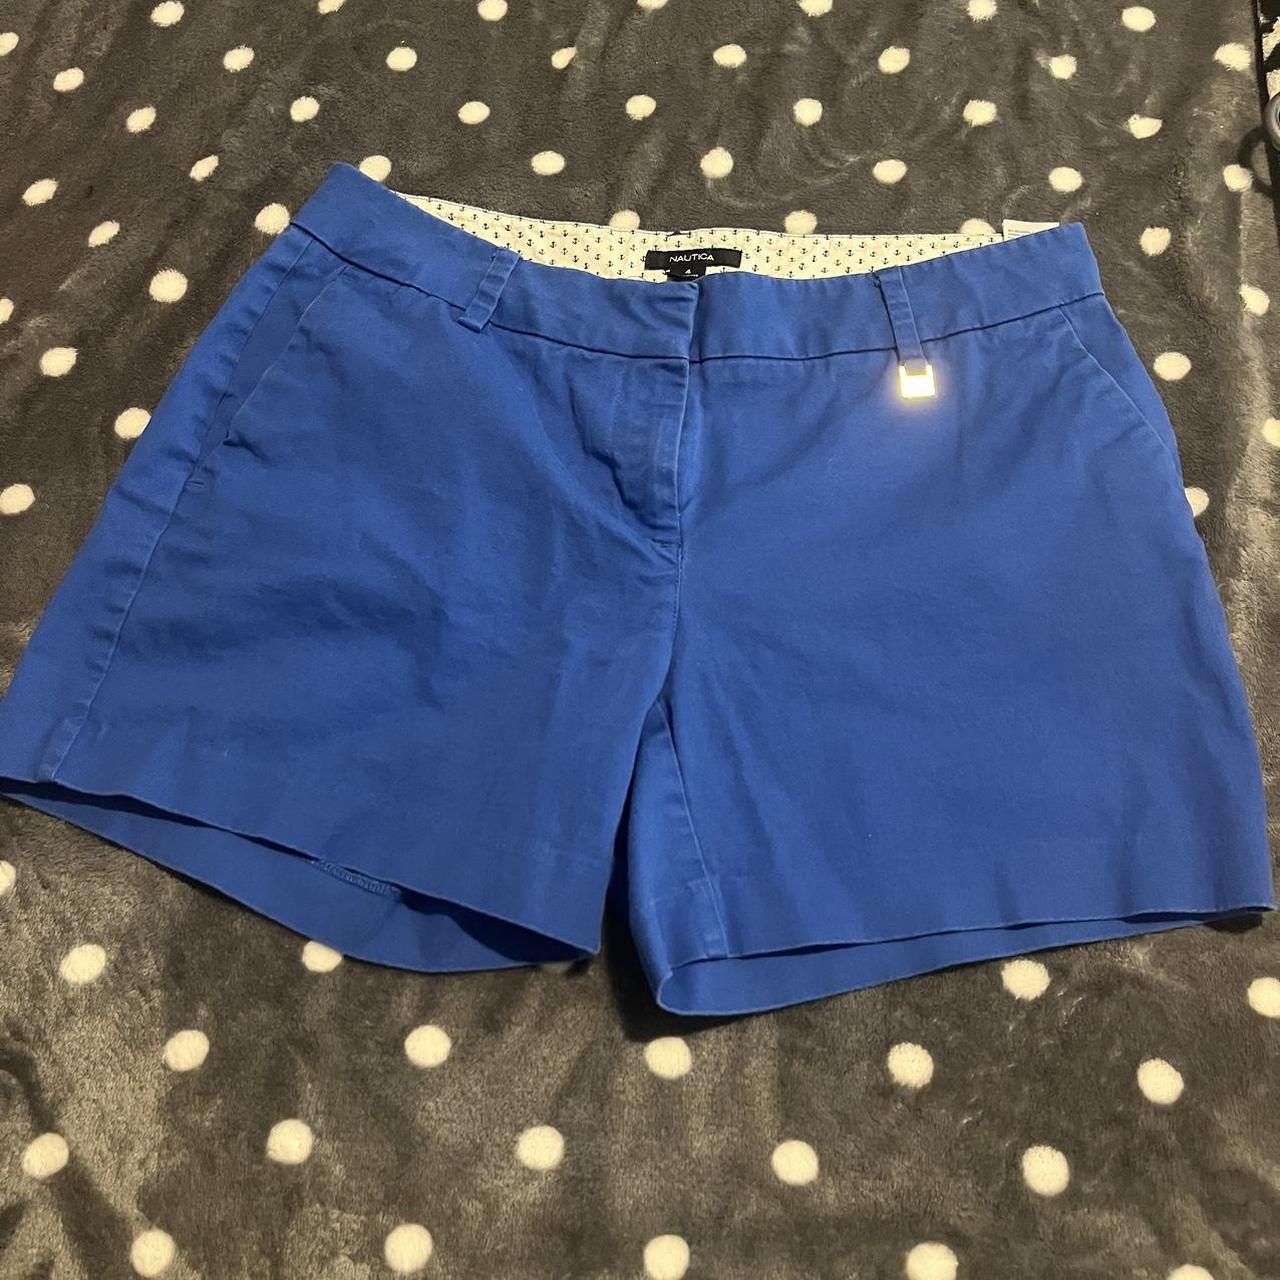 Nautica preppy light blue shorts super cute for... - Depop